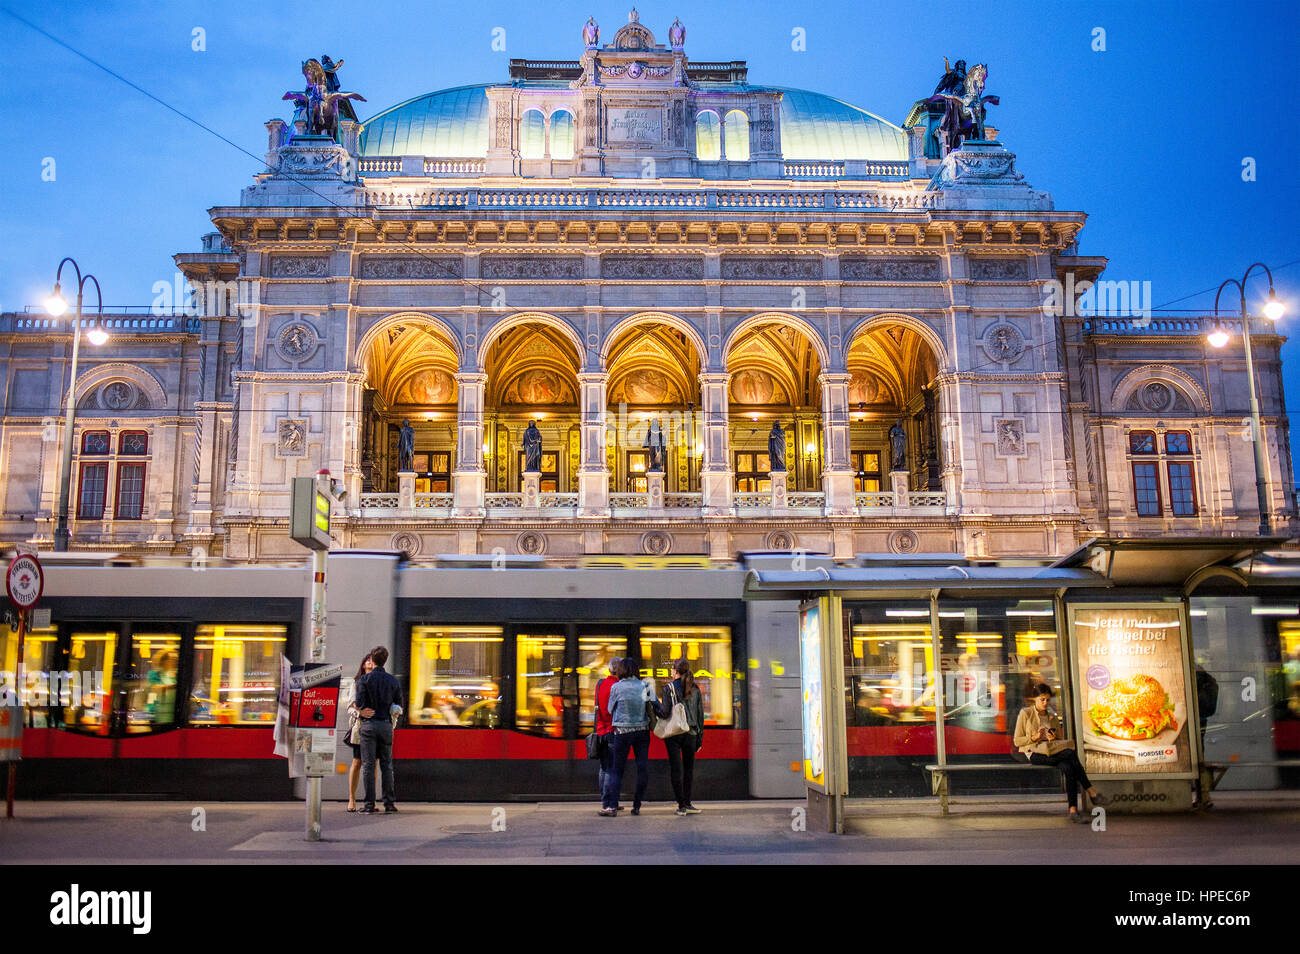 Tram and Staatsoper (Vienna State Opera), Ringstrasse, ring road,  Vienna, Austria, Europe Stock Photo